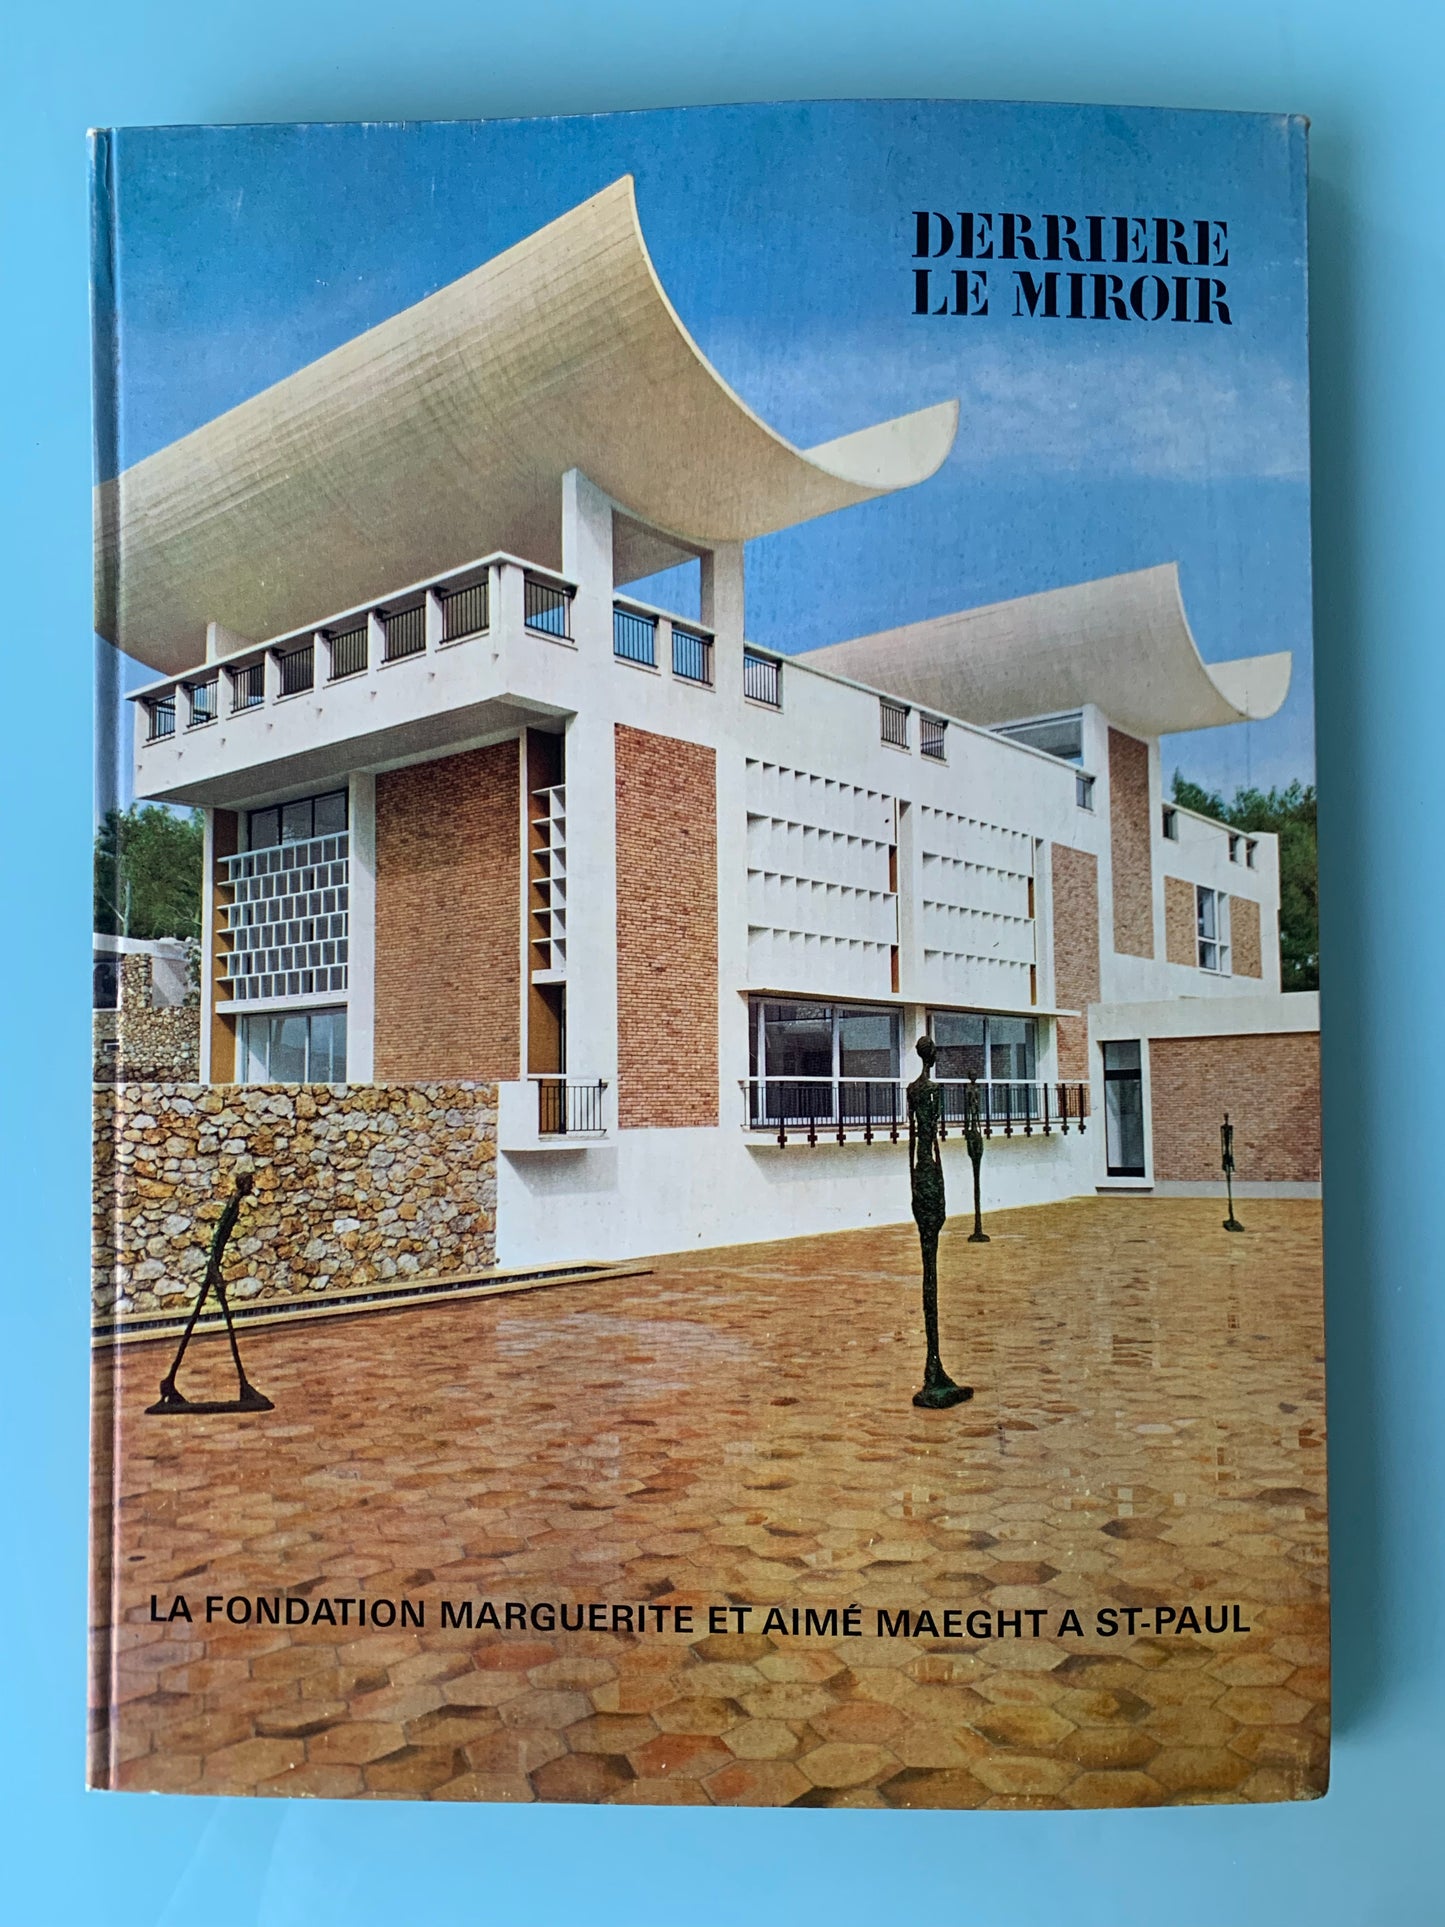 Derriere Le Miroir. “Le Fondation Marguerite et Aimé Maeght a St. Paul”, 1964